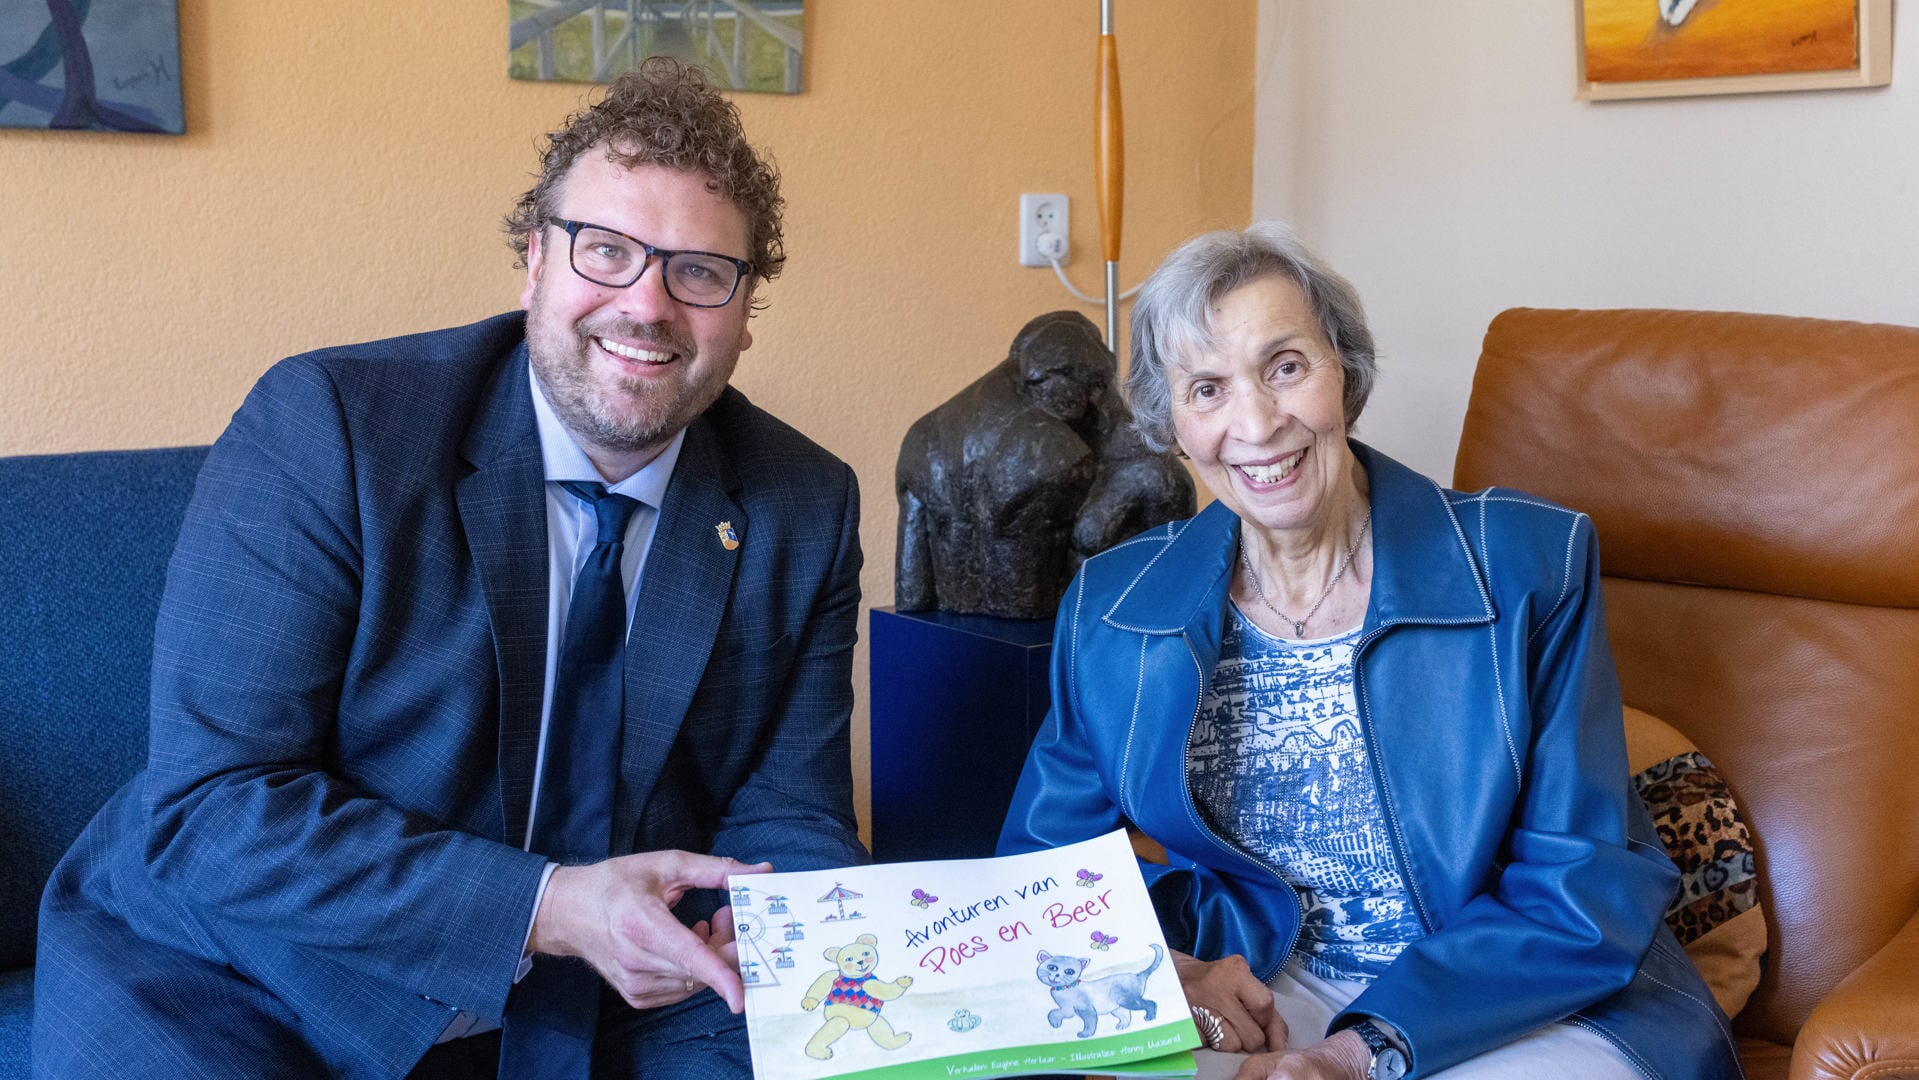 Eugènie Herlaar overhandigde het eerste exemplaar van haar kinderboek aan burgemeester Maarten Poorter.